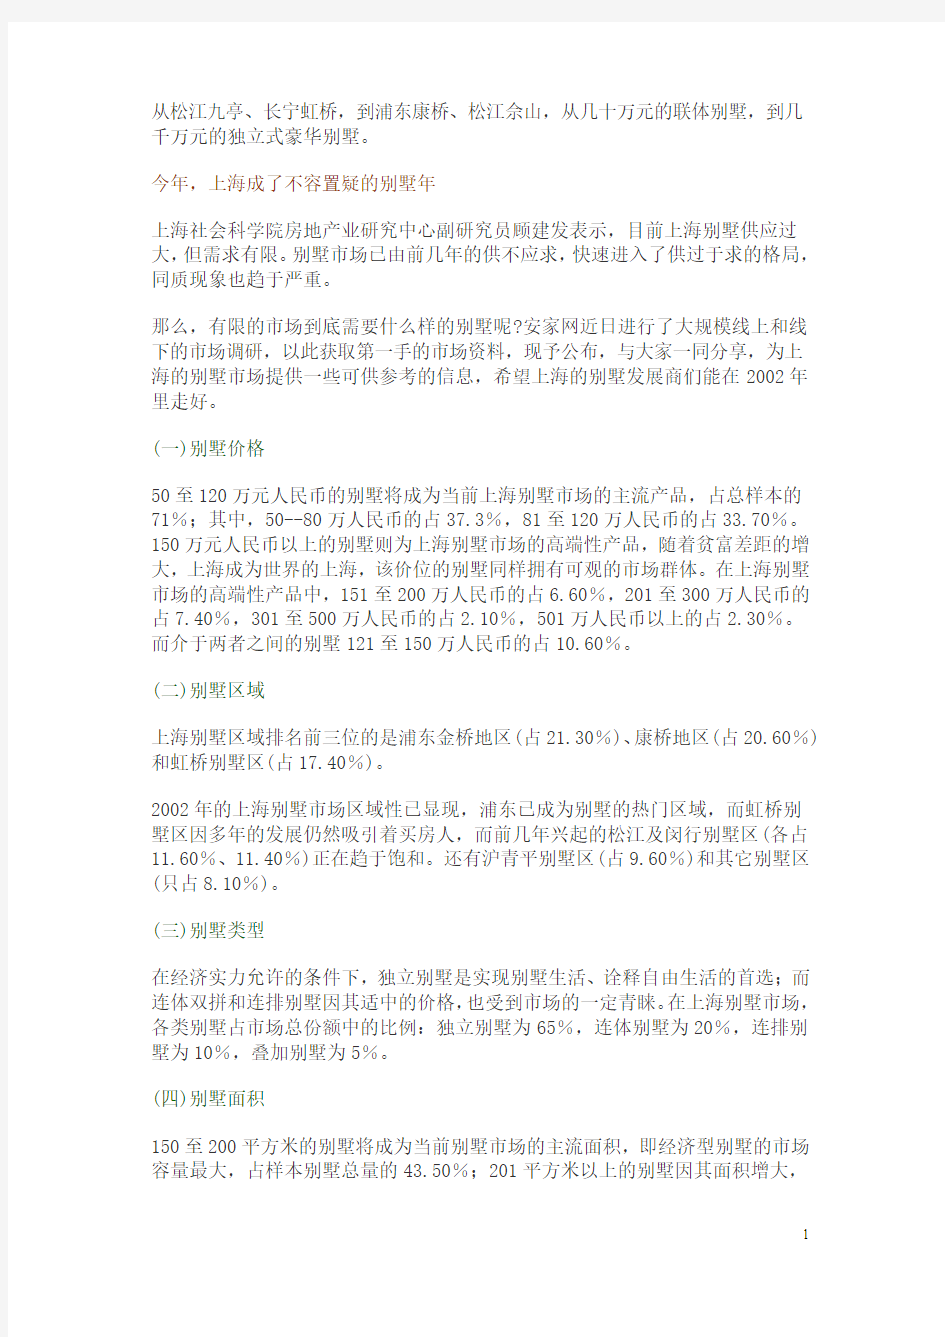 房地产上海别墅市场分析